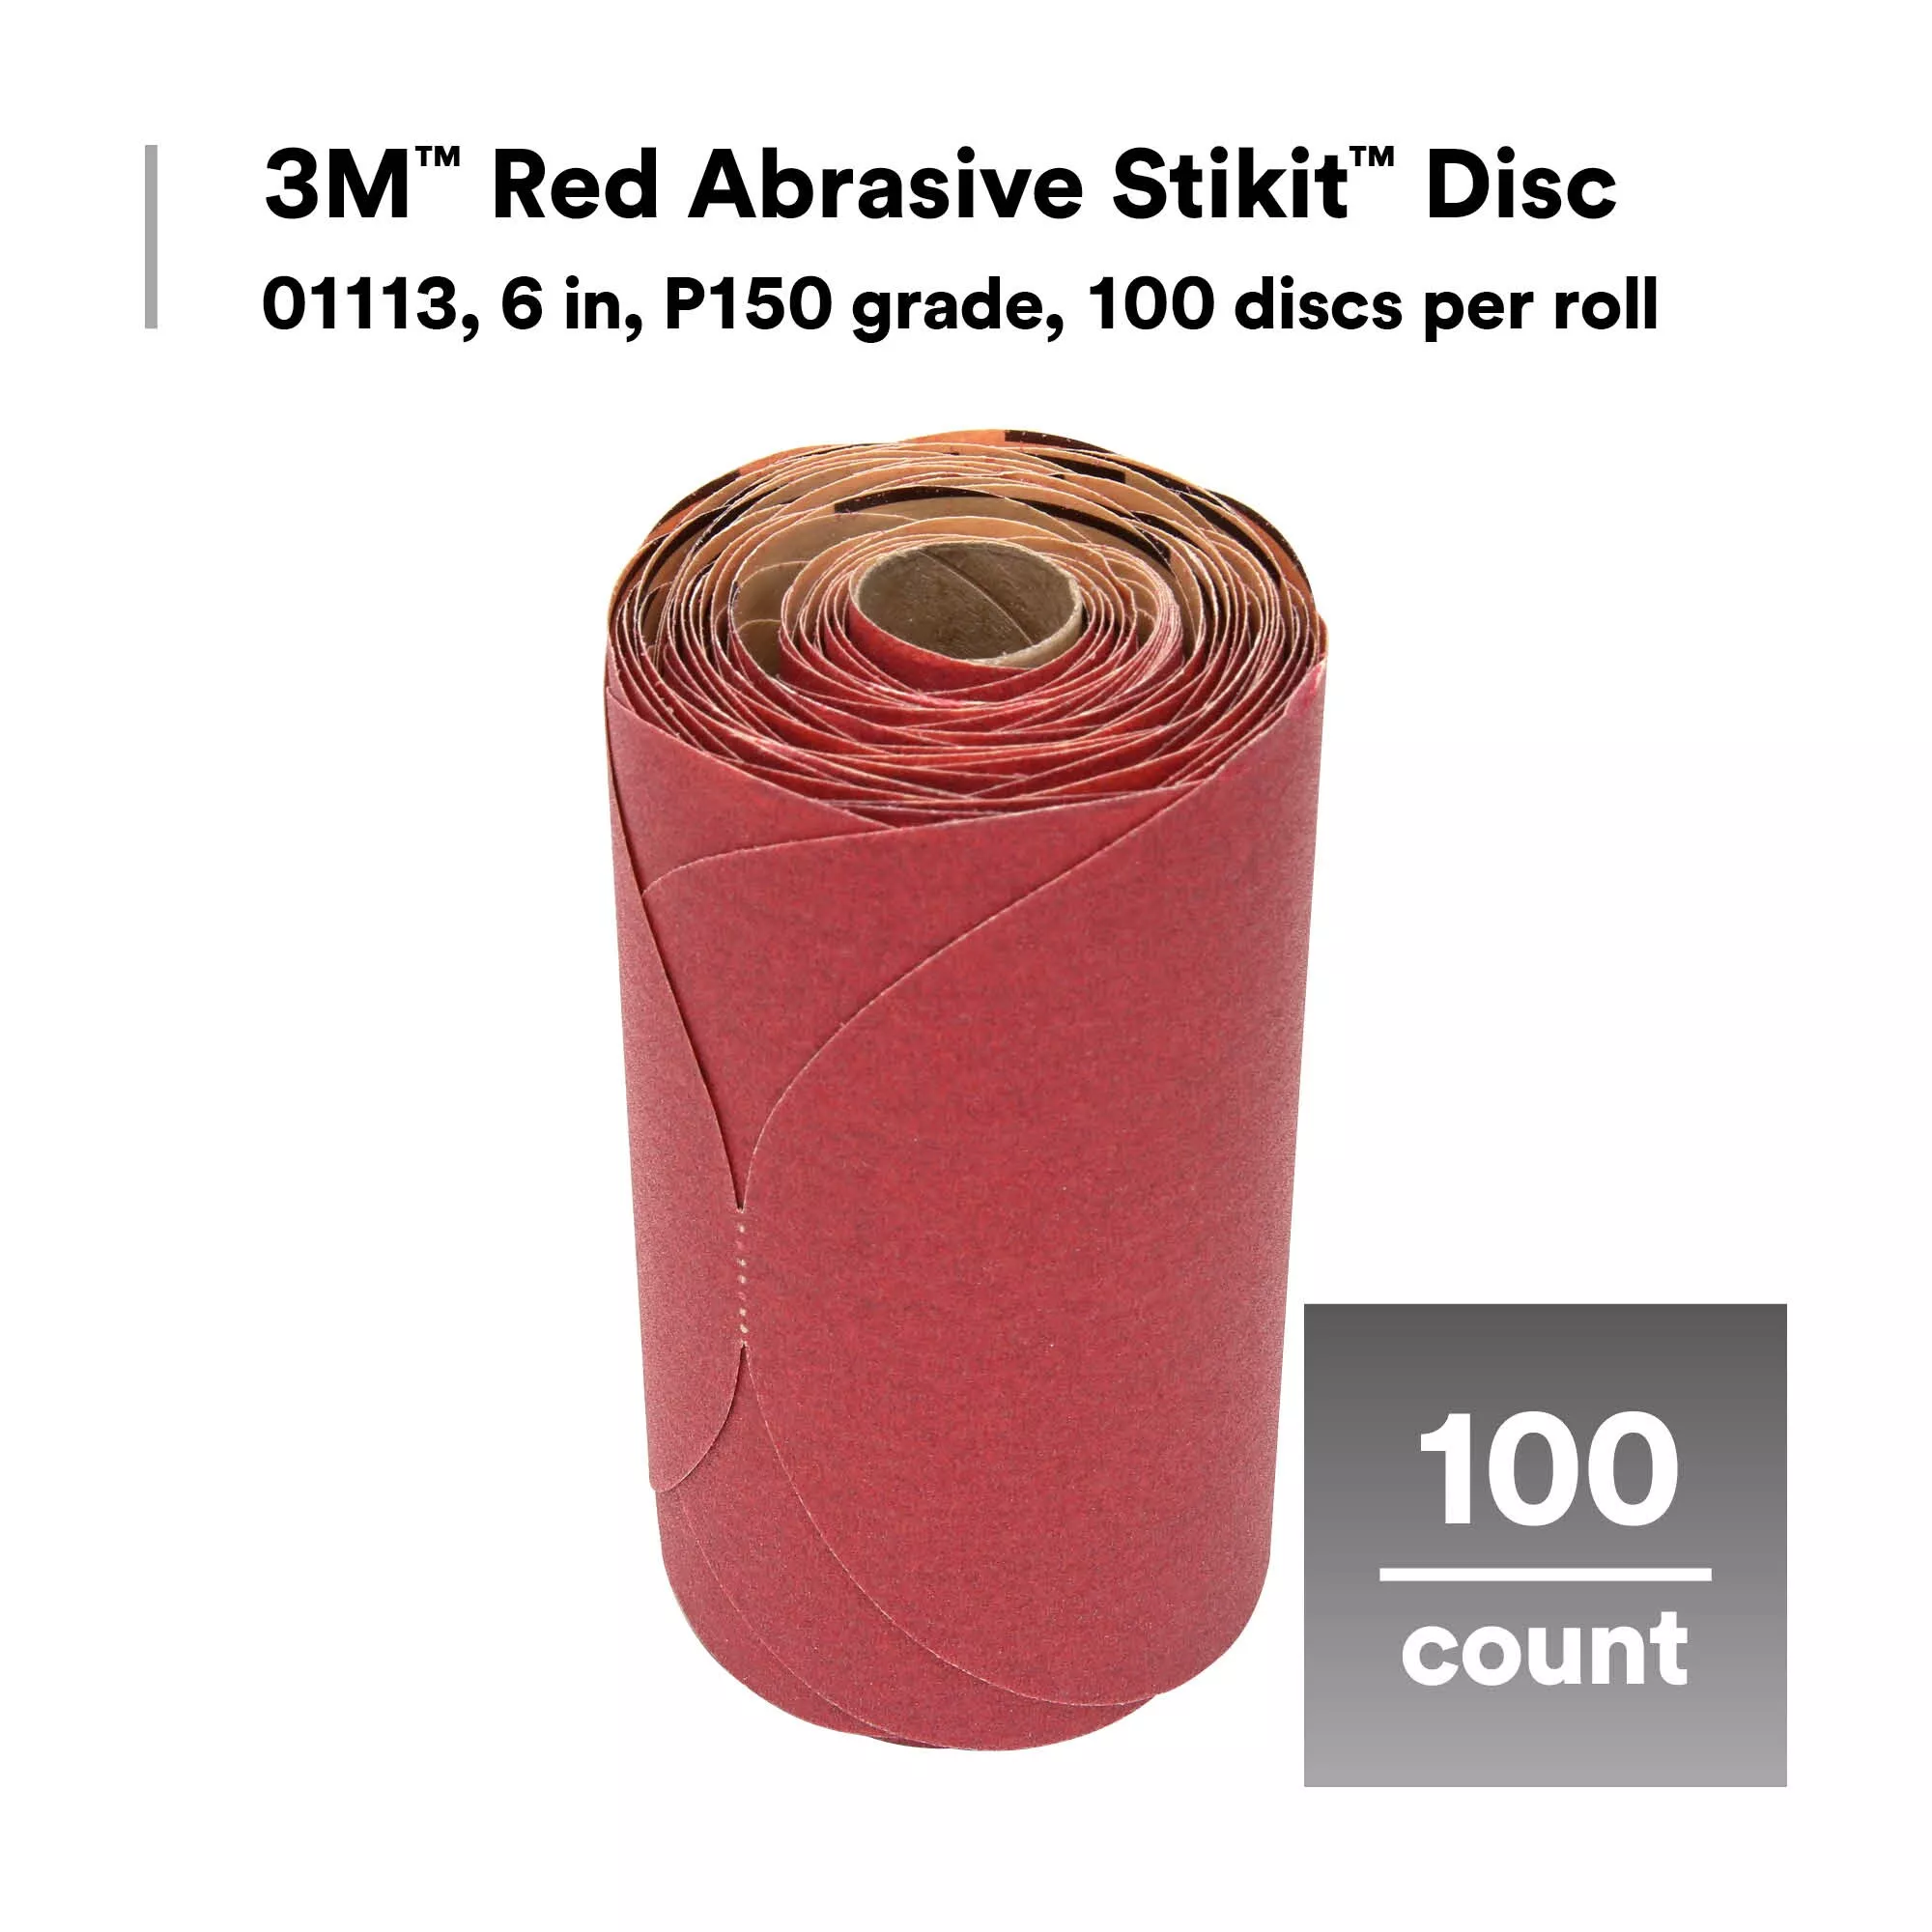 SKU 7000119770 | 3M™ Red Abrasive Stikit™ Disc